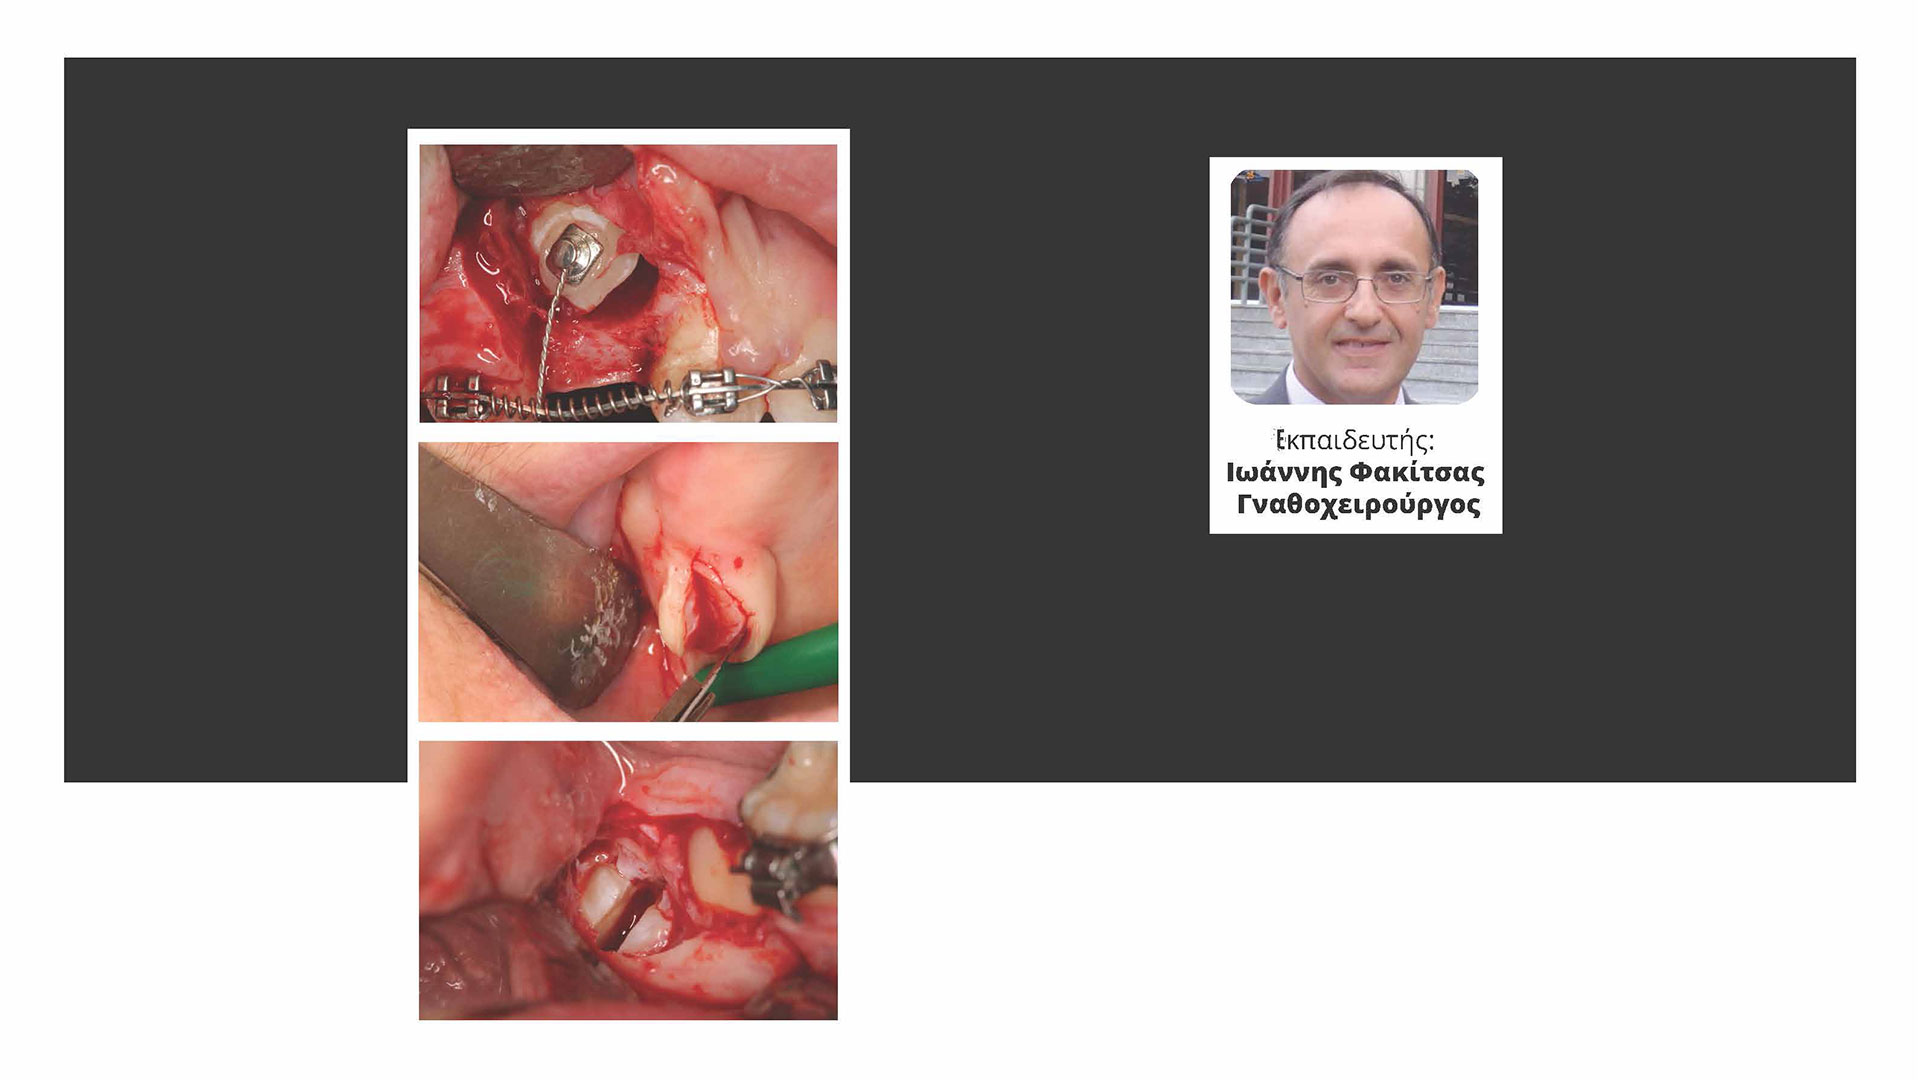 Διαχείριση Περιστατικών Στοματικής Χειρουργικής στην Καθημερινή Κλινική Οδοντιατρική Πράξη